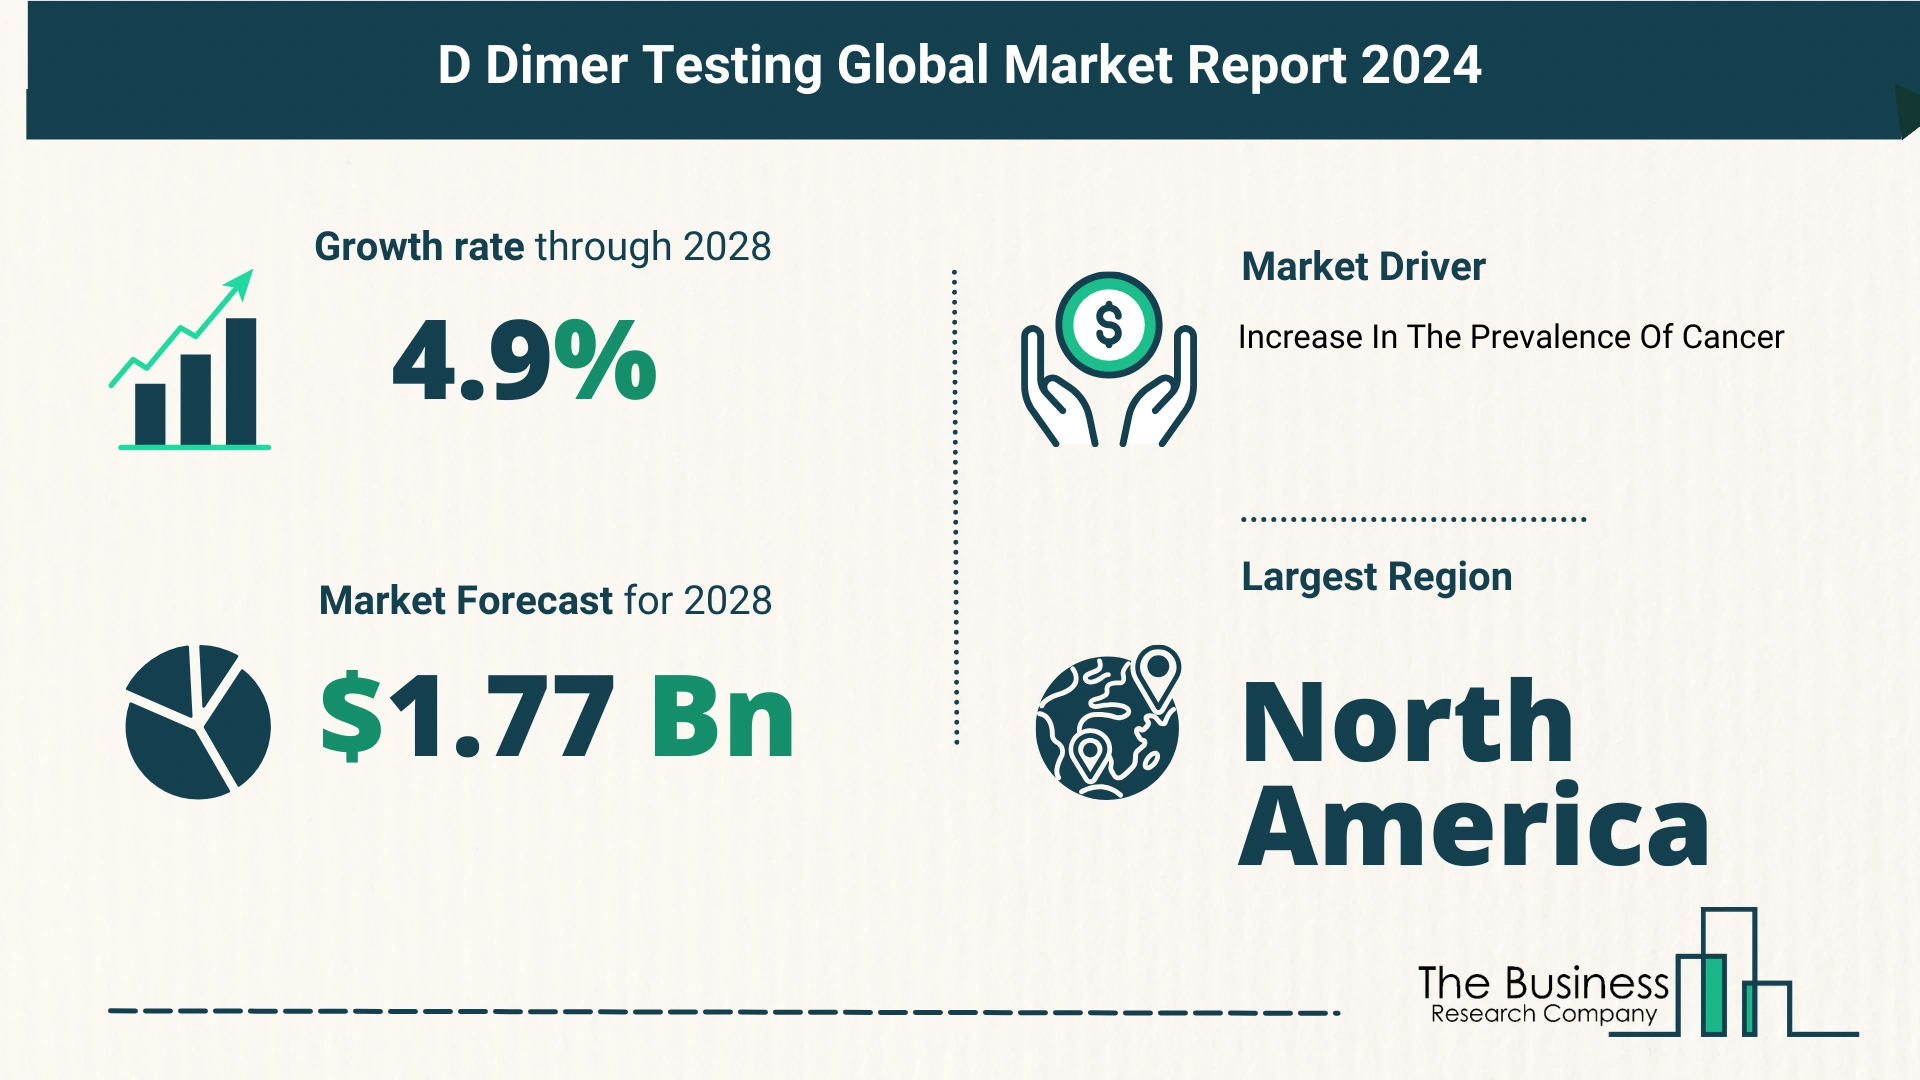 Global D Dimer Testing Market Size